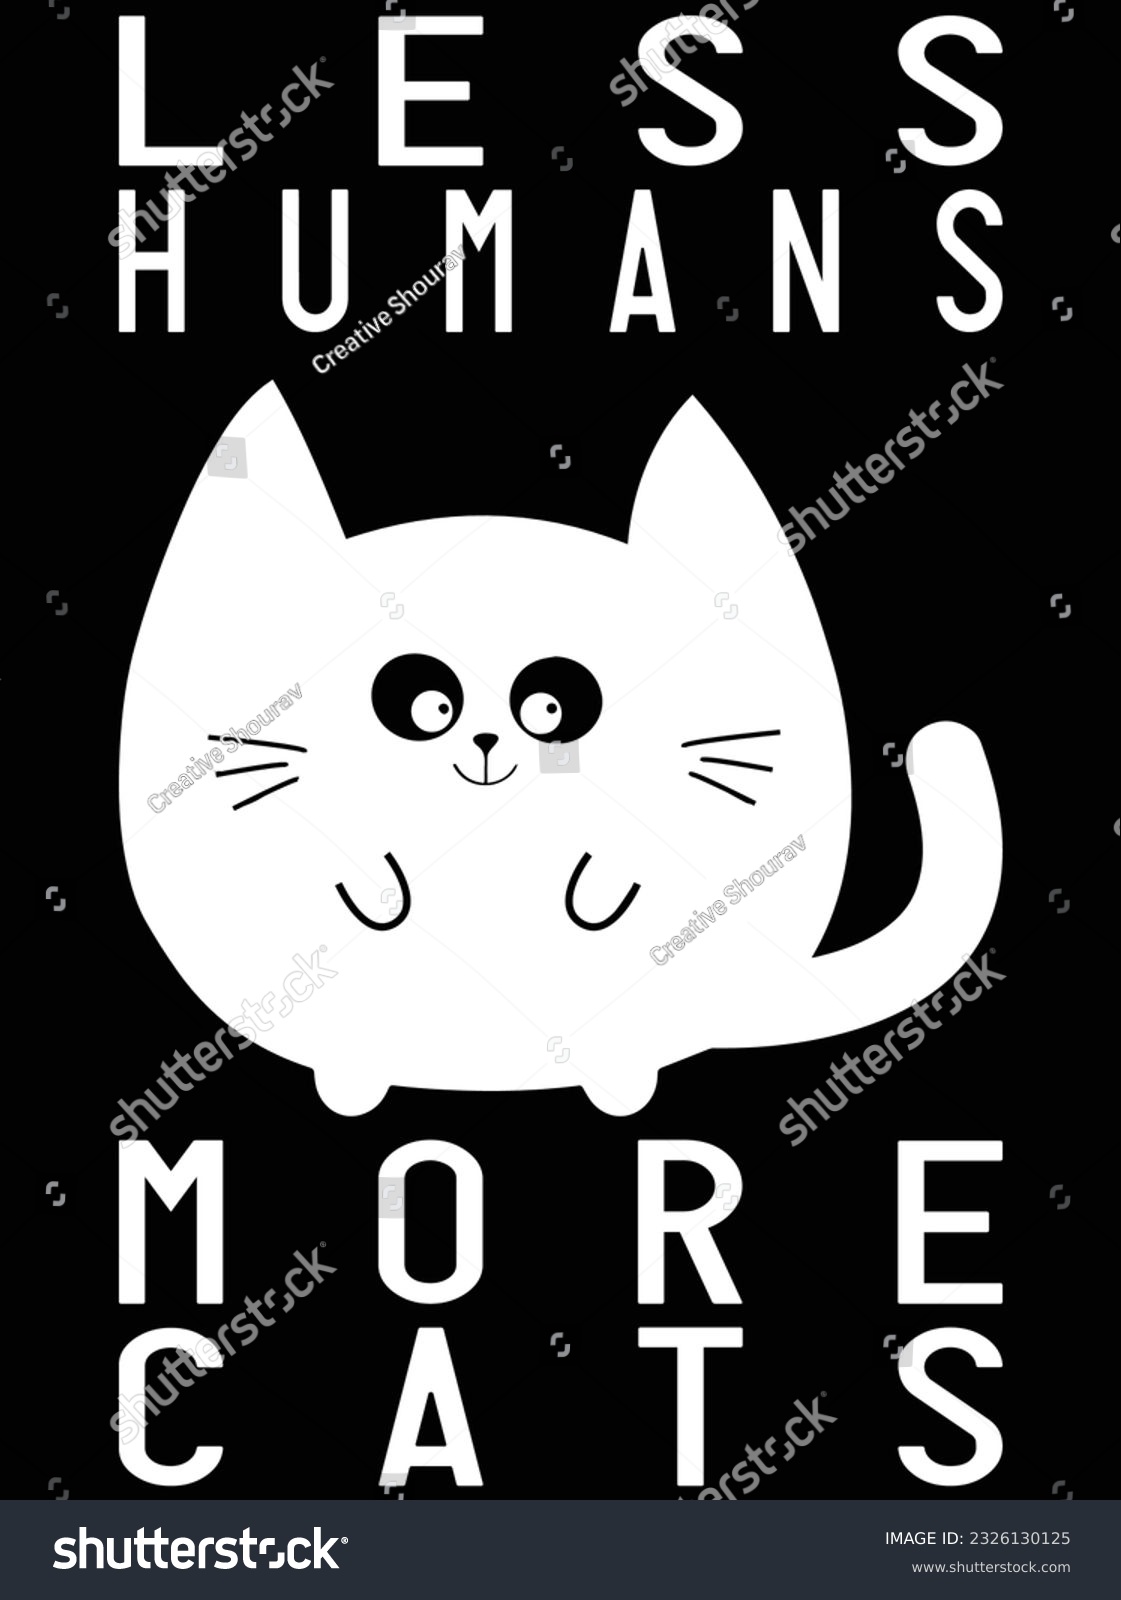 SVG of Less humans more cats vector art design, eps file. design file for t-shirt. SVG, EPS cuttable design file svg